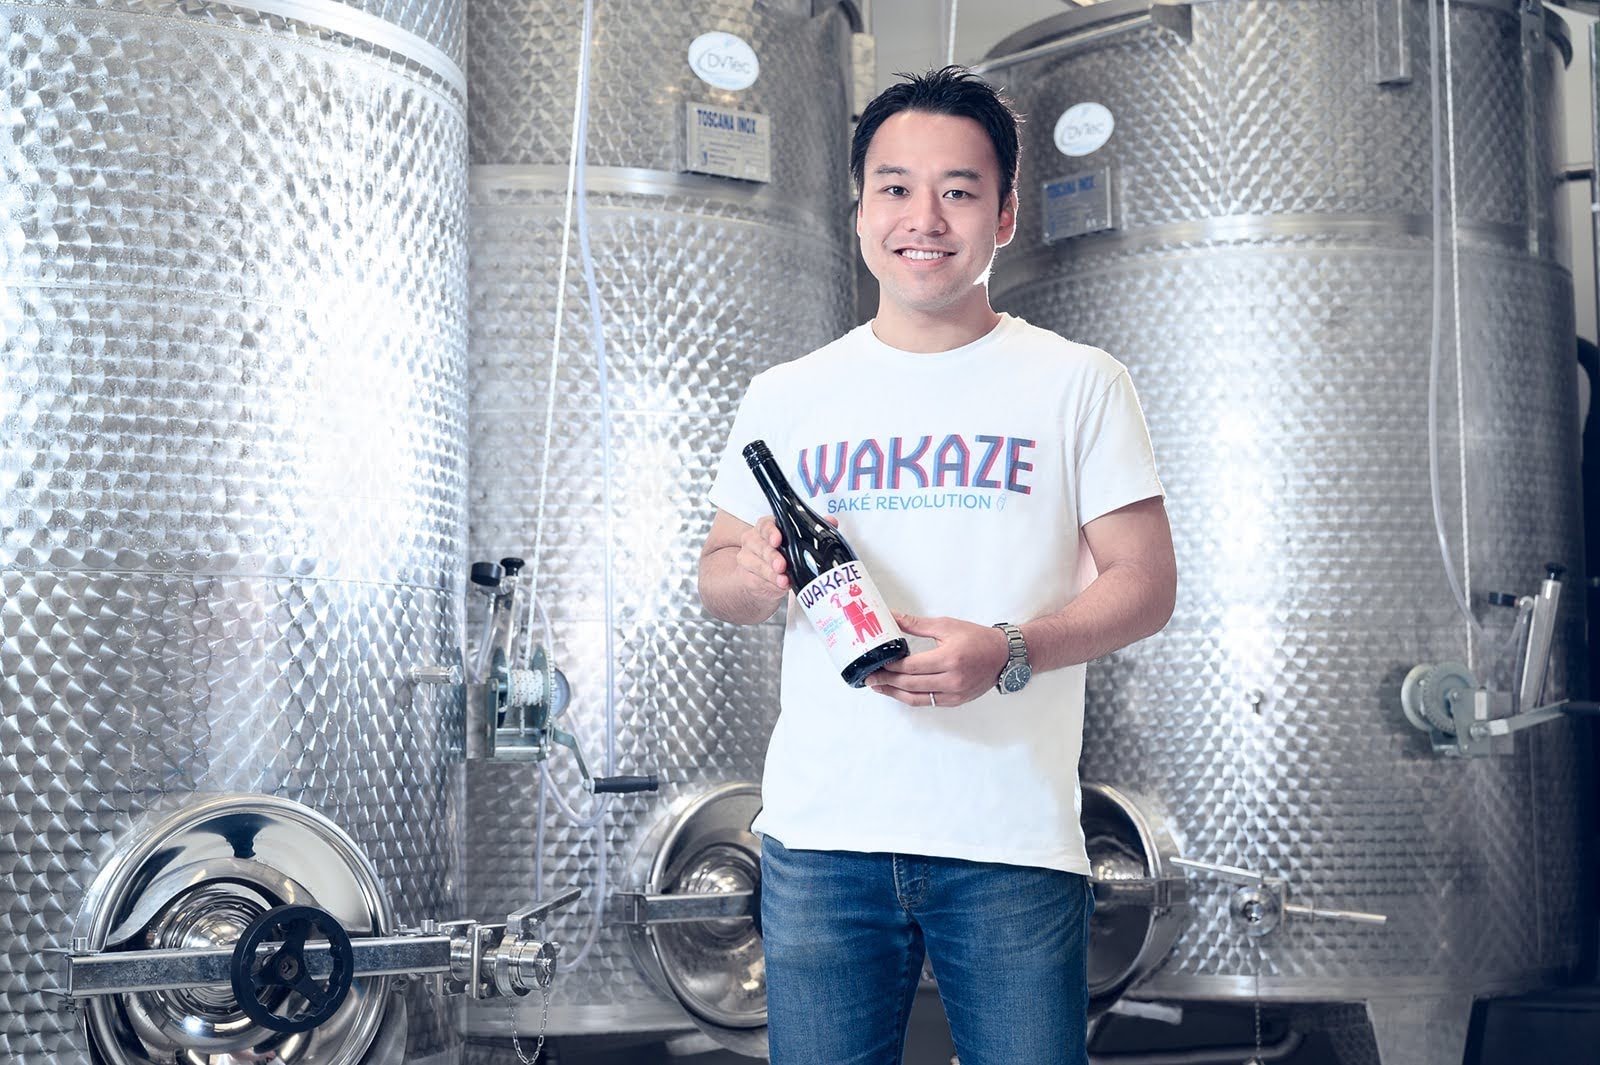 ビール、ワインに次ぐ“第3の選択肢に”──パリで日本酒を造る「WAKAZE」が資金調達